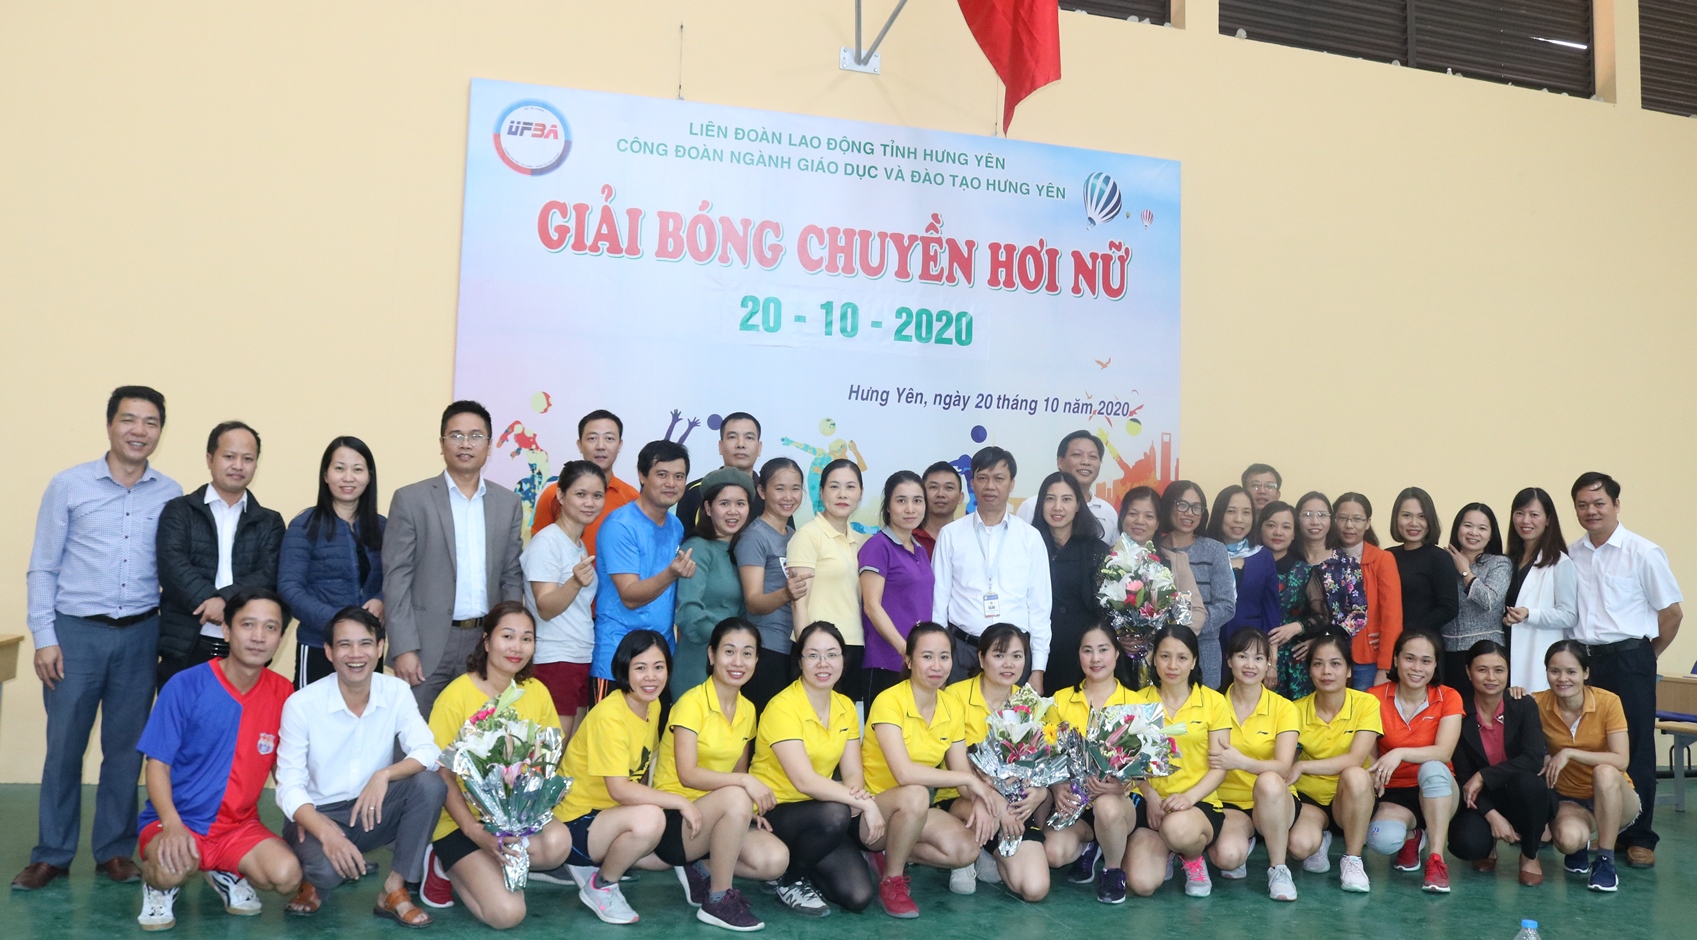 Giải thi đấu bóng chuyền hơi nữ chào mừng ngày Phụ nữ Việt Nam 20/10/2020